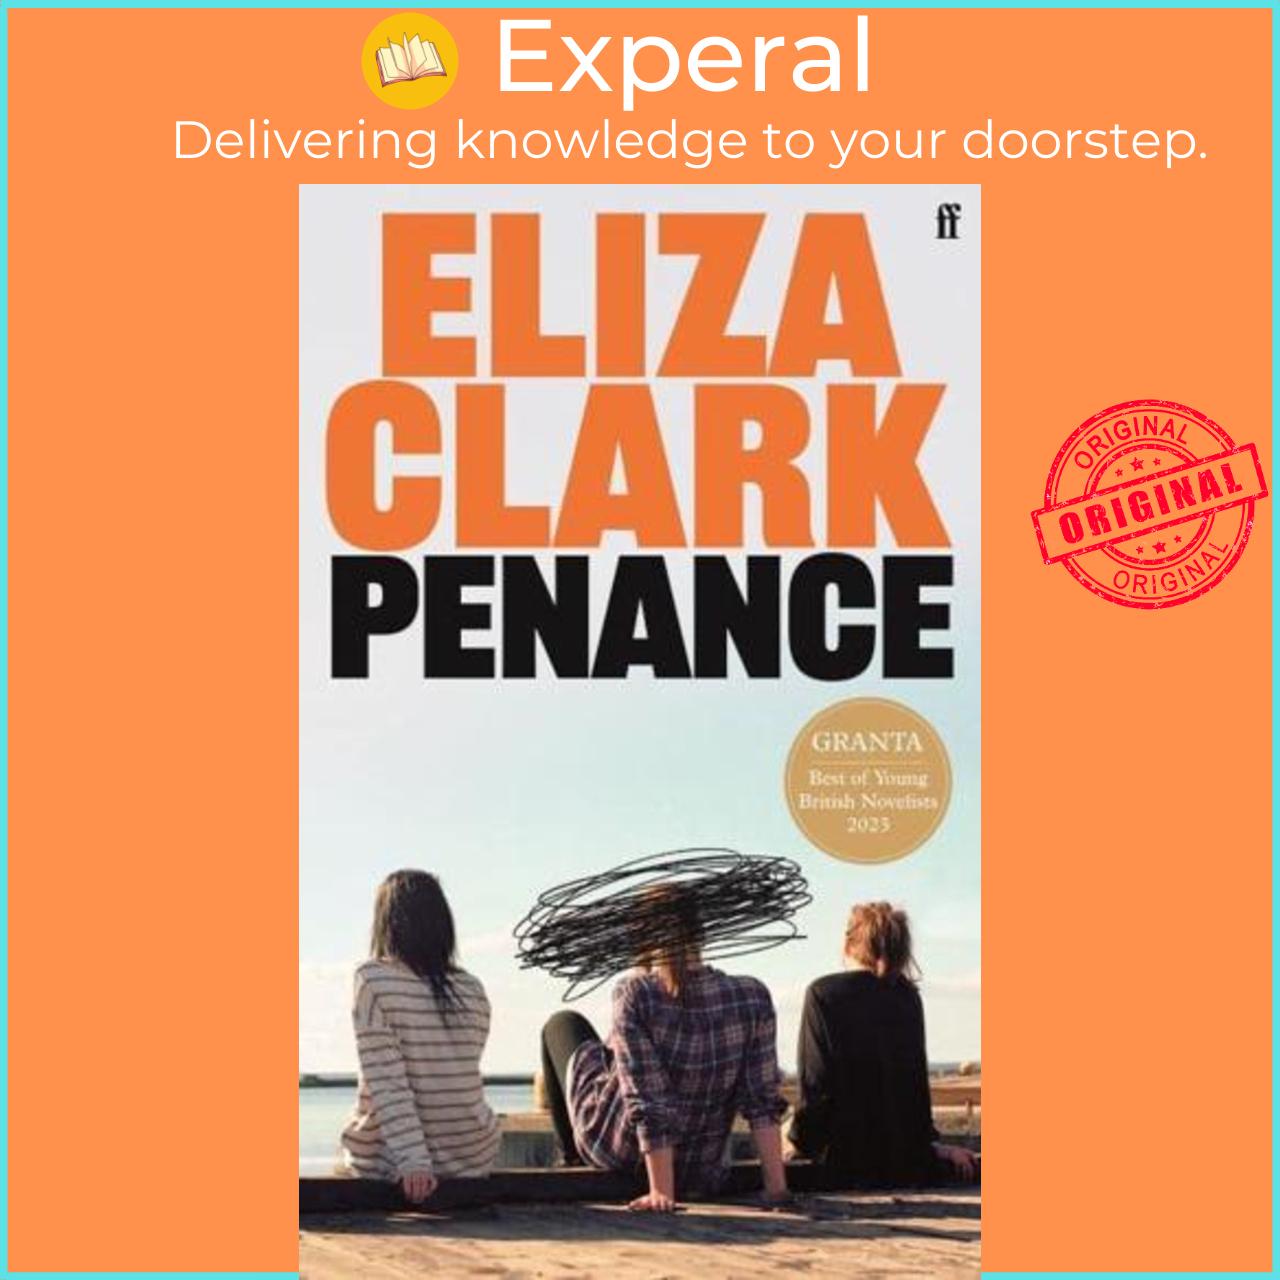 Sách - Penance by Eliza Clark (UK edition, Hardback)